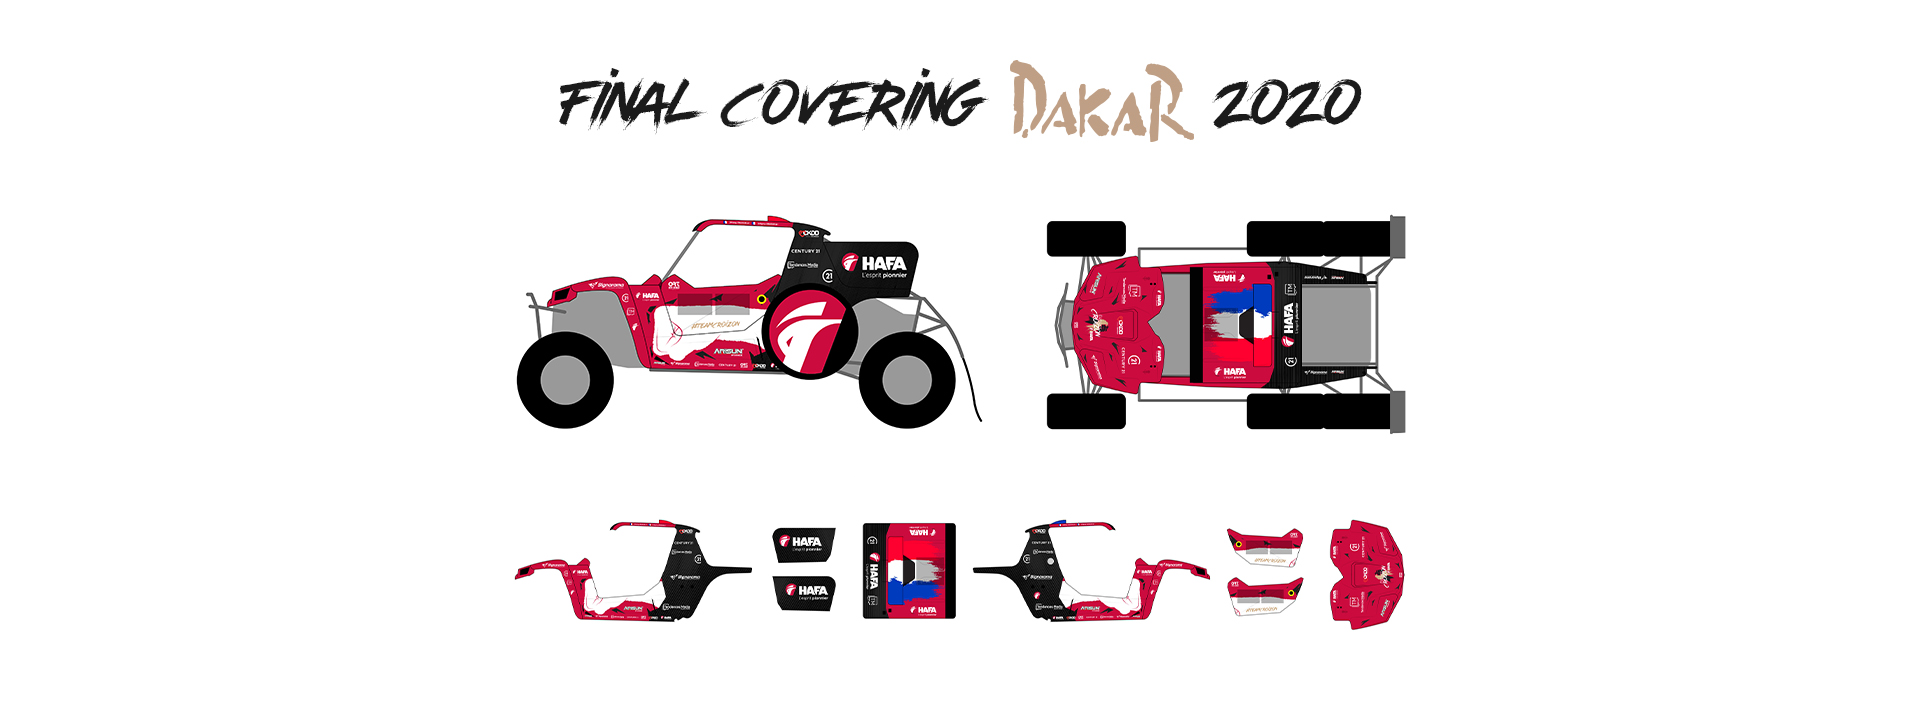 Dakar 2020 : la voiture